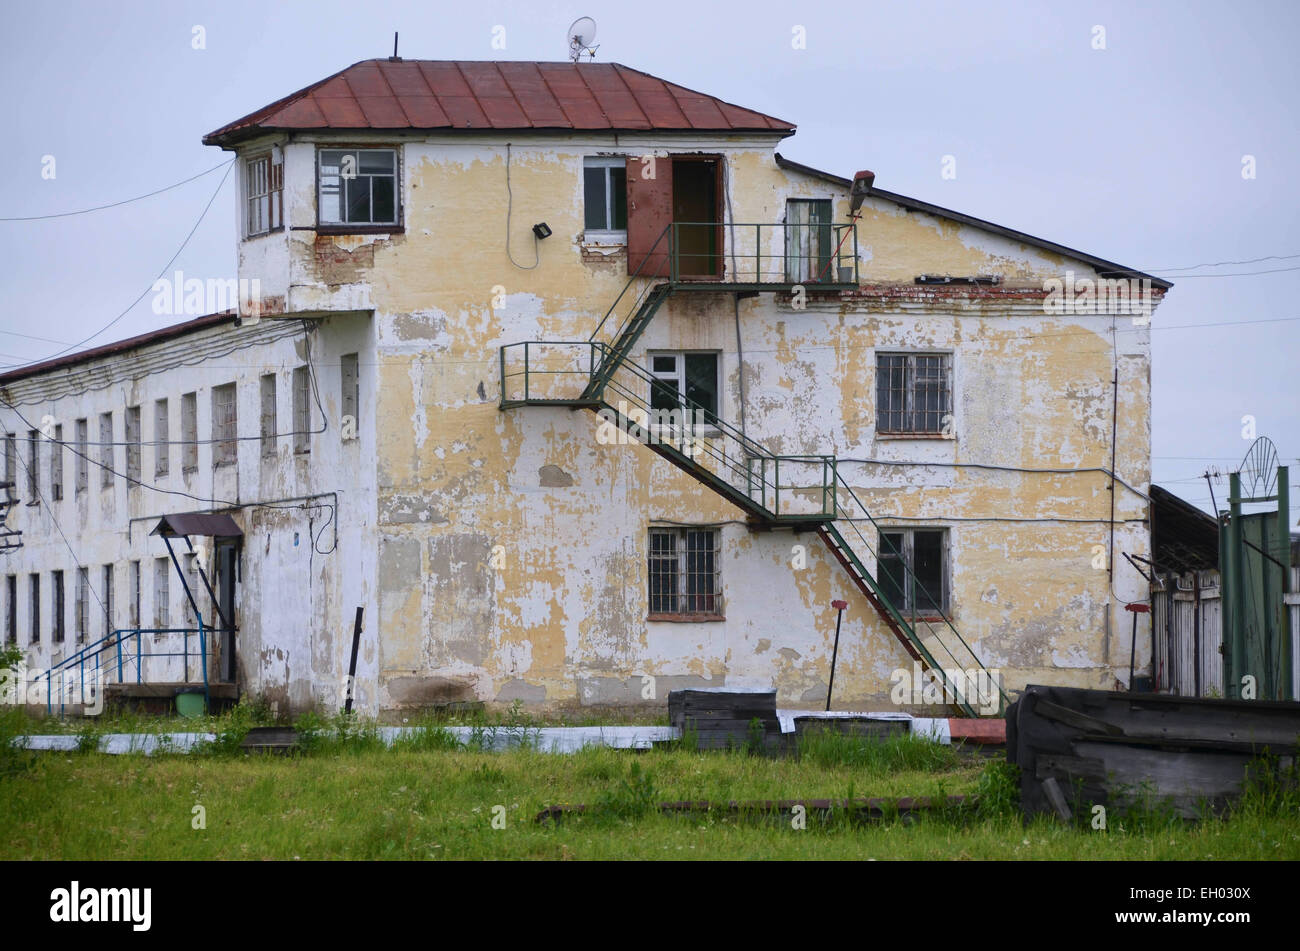 L'ancien camp de goulag soviétique Perm36, à l'ouest de la plage de l'Oural en Russie près de la ville de Perm. Bâtiment administratif. Banque D'Images